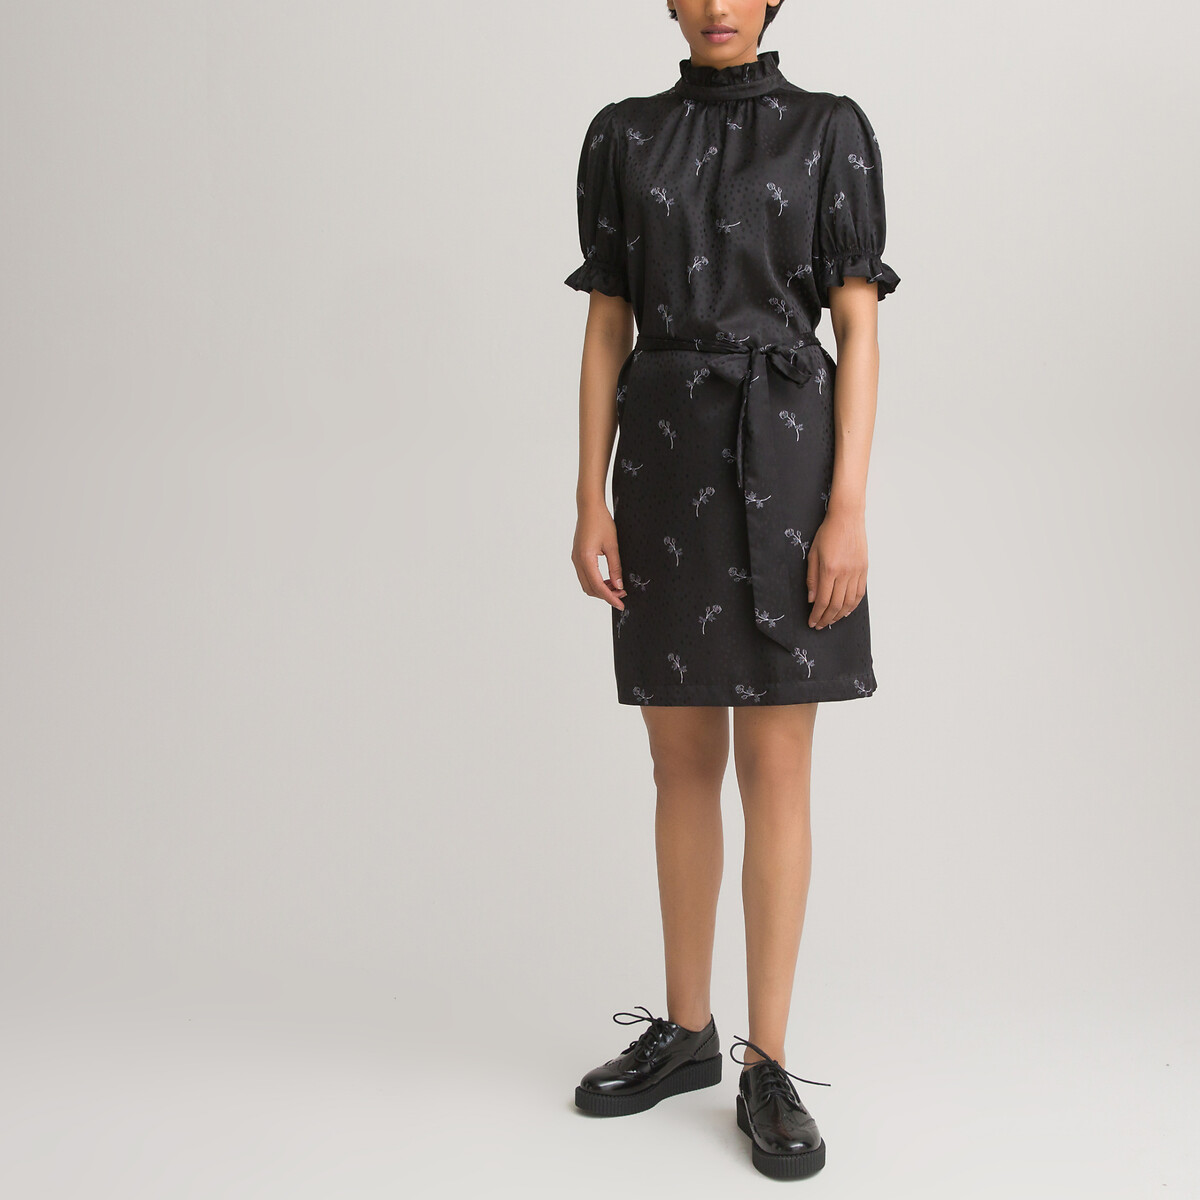 Платье LaRedoute С воротником-стойкой короткие рукава из сатина с принтом 42 черный, размер 42 - фото 2